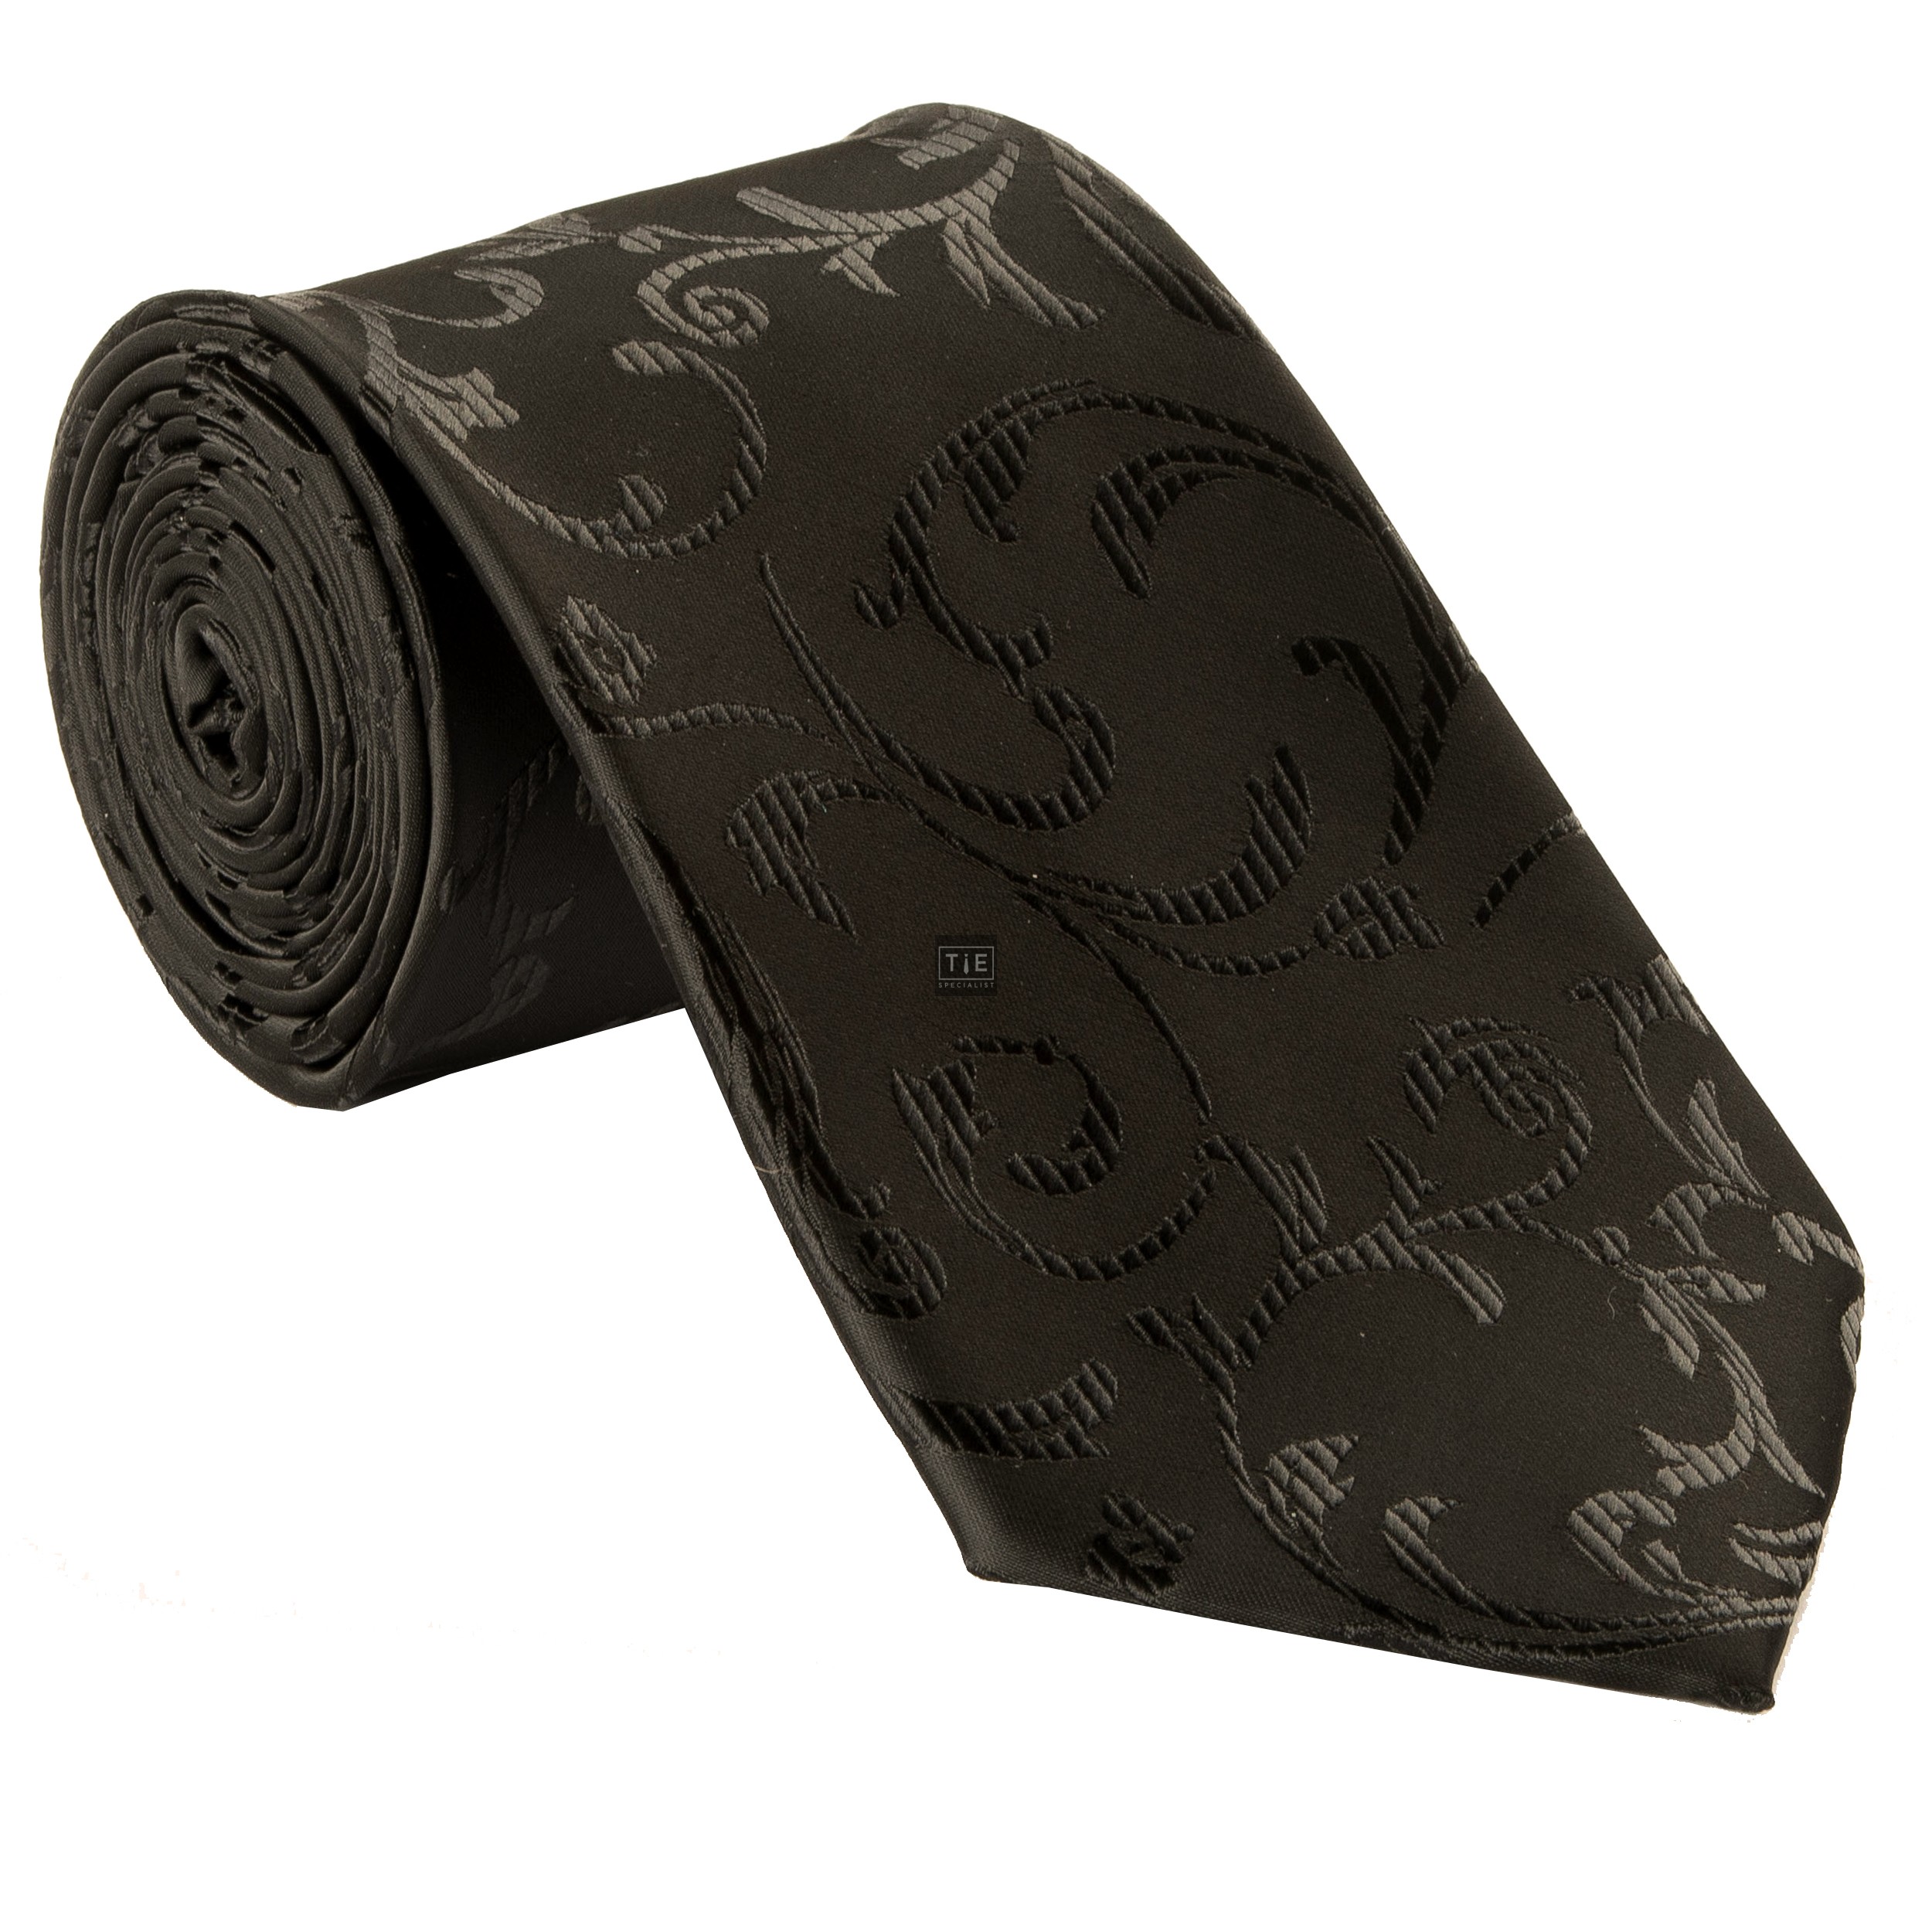 Black on Black Swirl Leaf Wedding Tie and Hankie Set